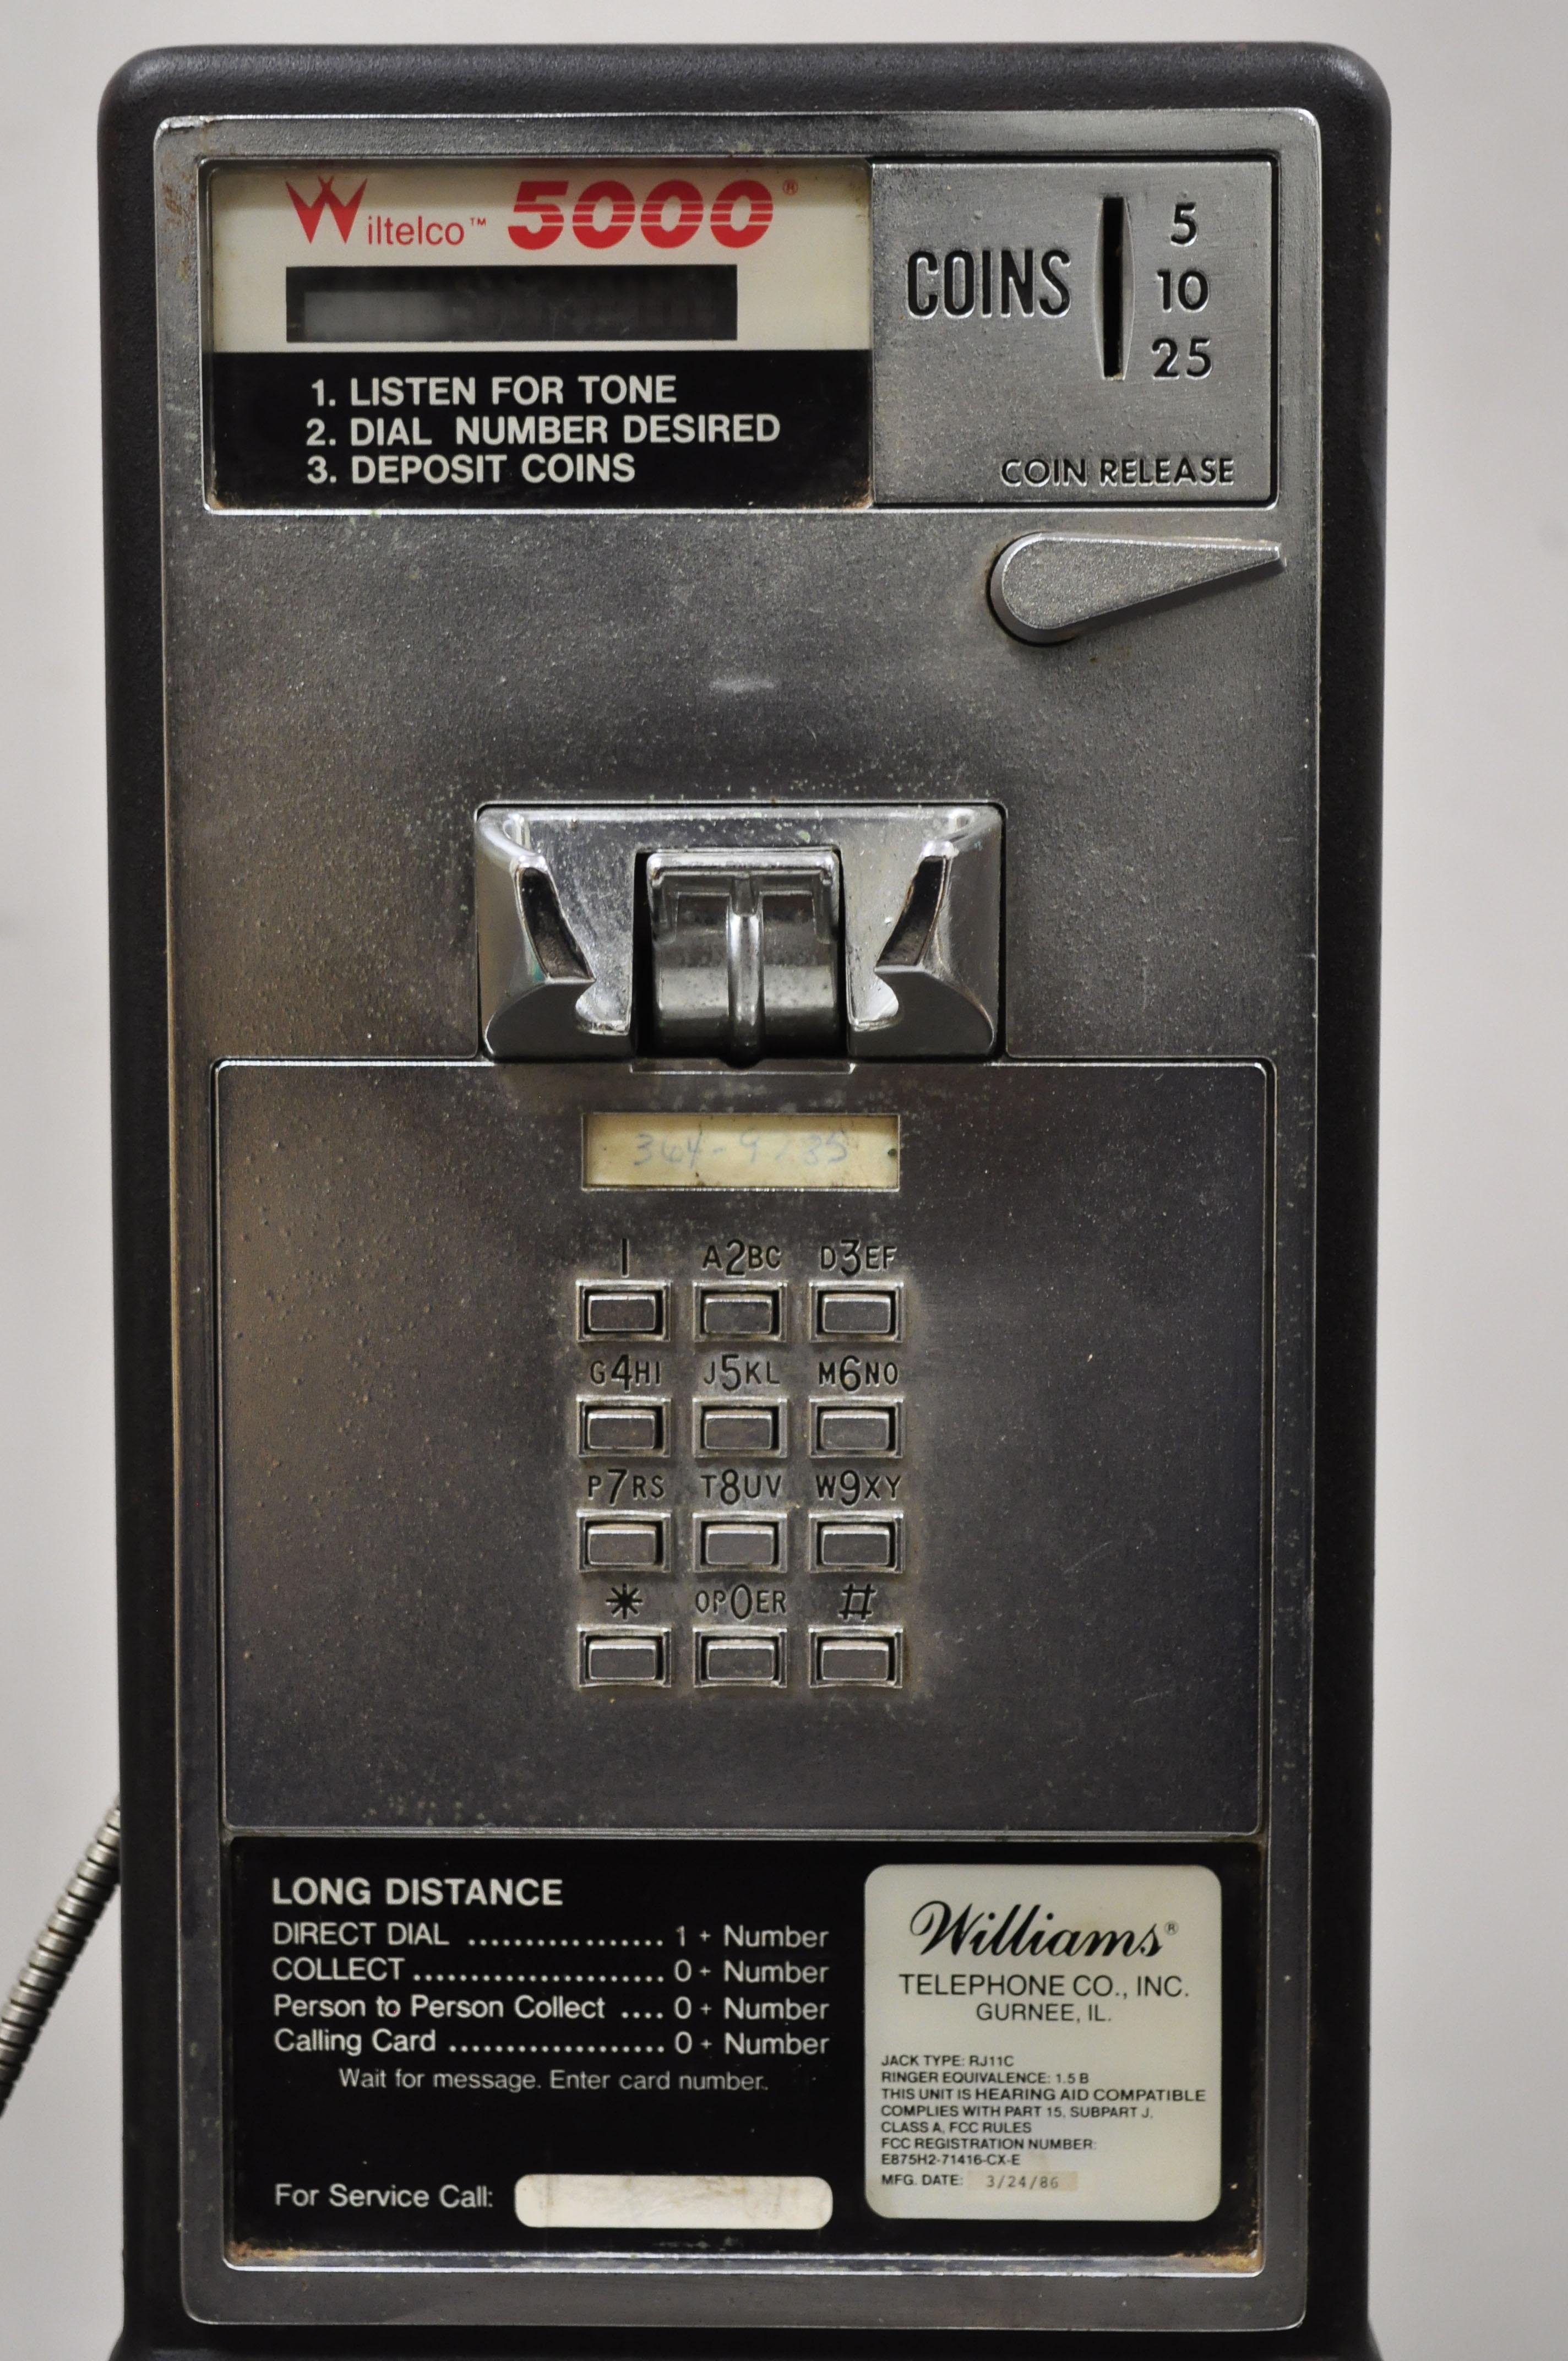 1986 phones